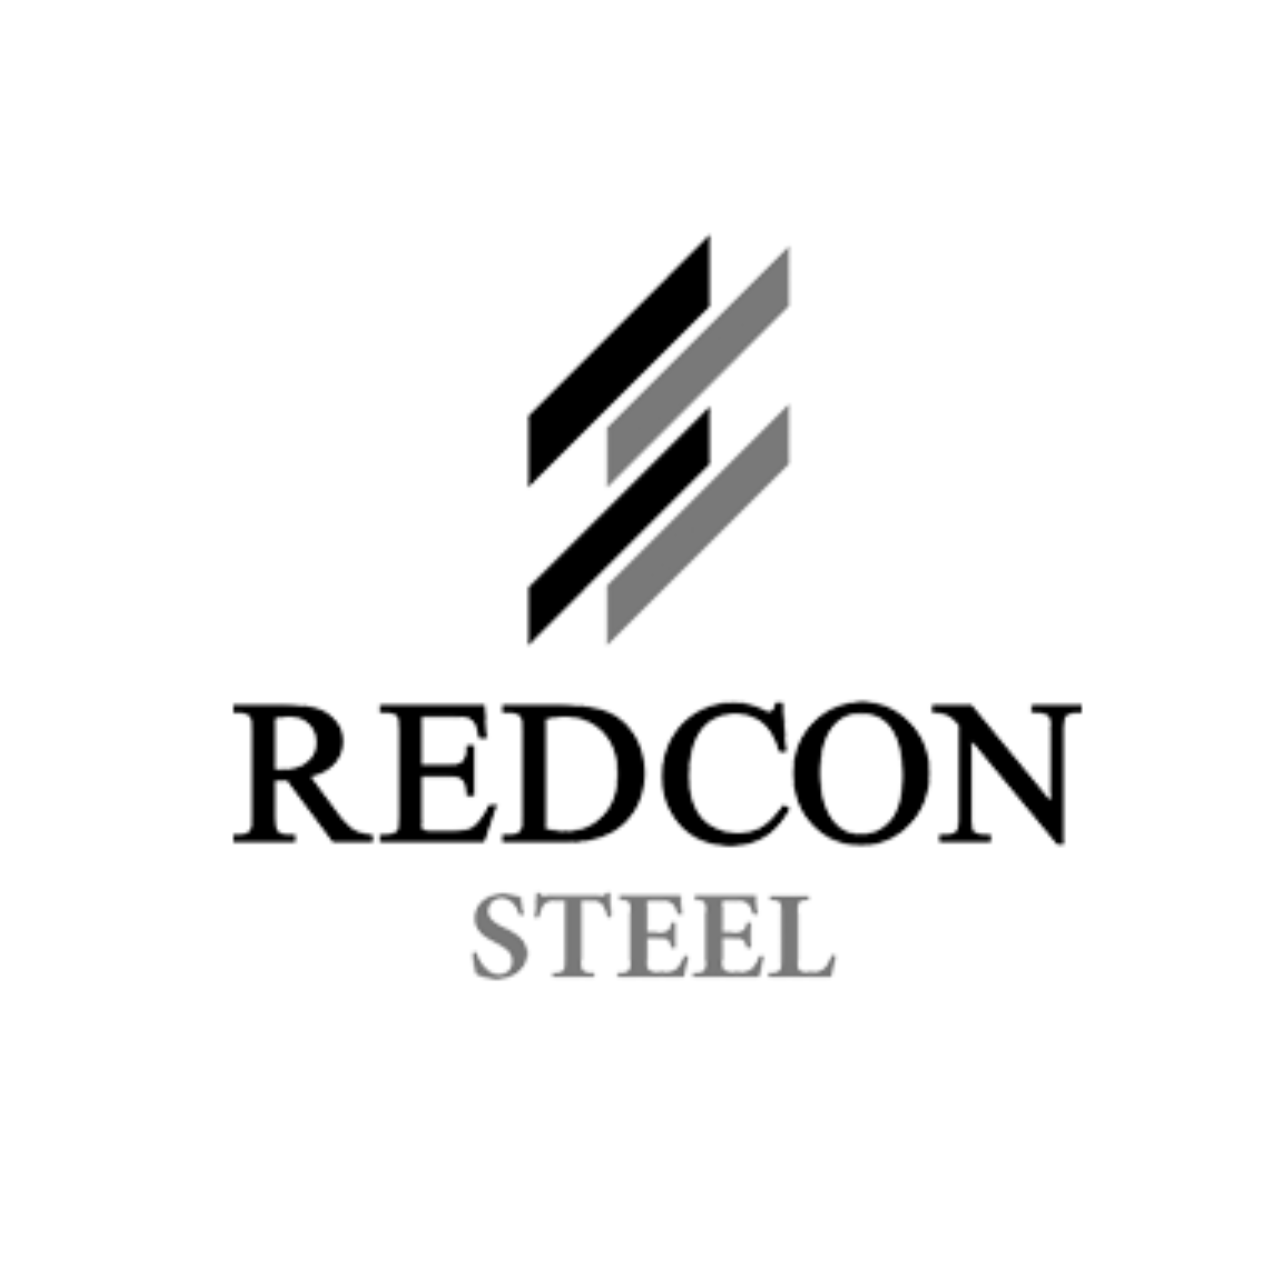 REDCON Steel